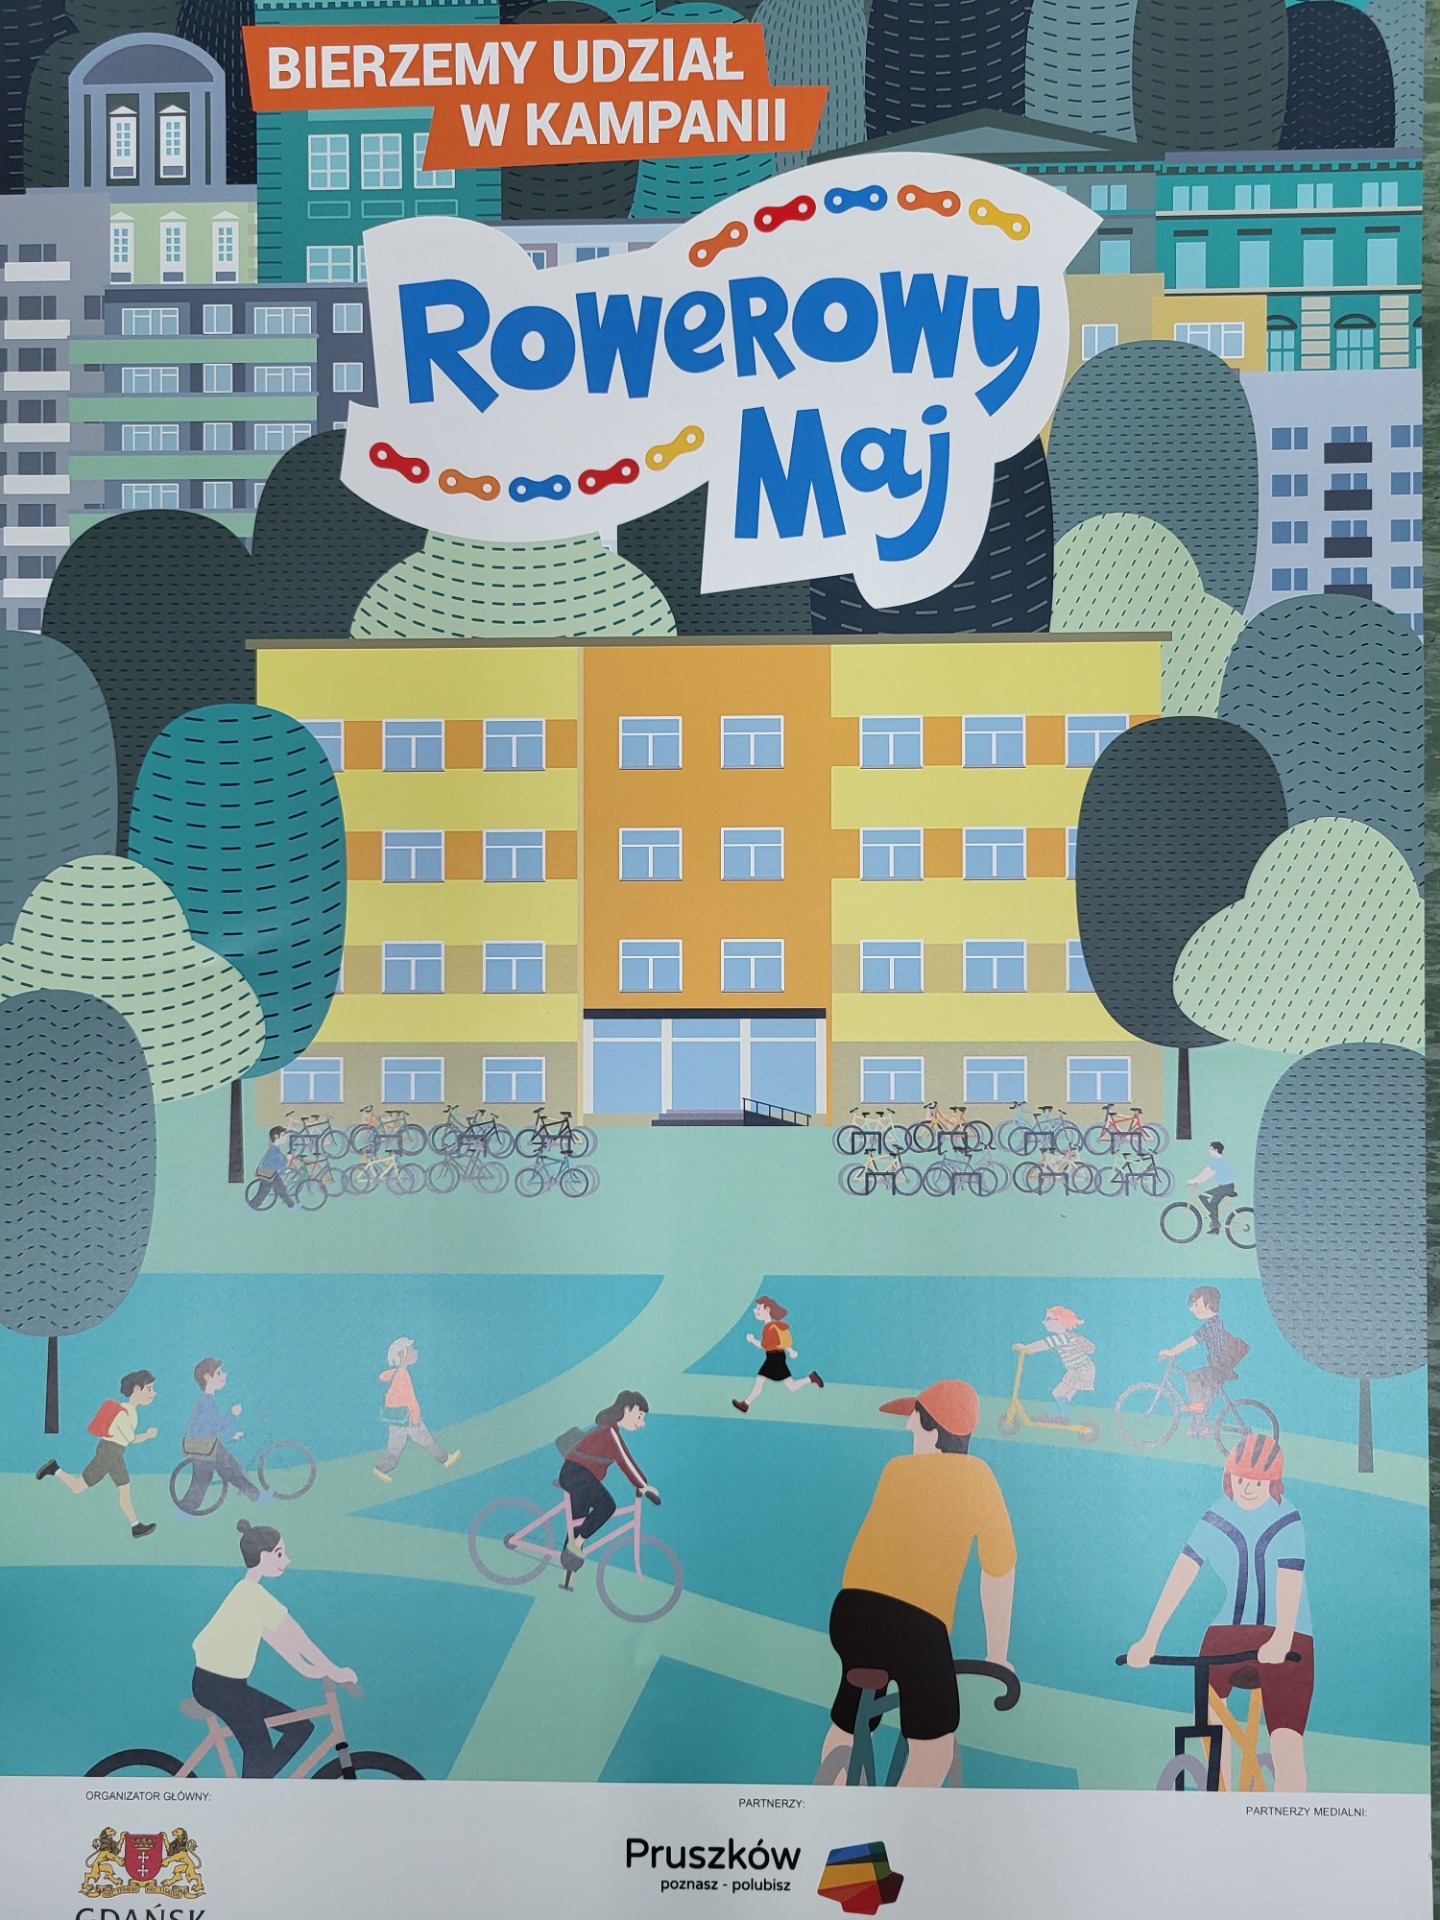 Kampania Rowerowy Maj🚴‍♀️ - Obrazek 1